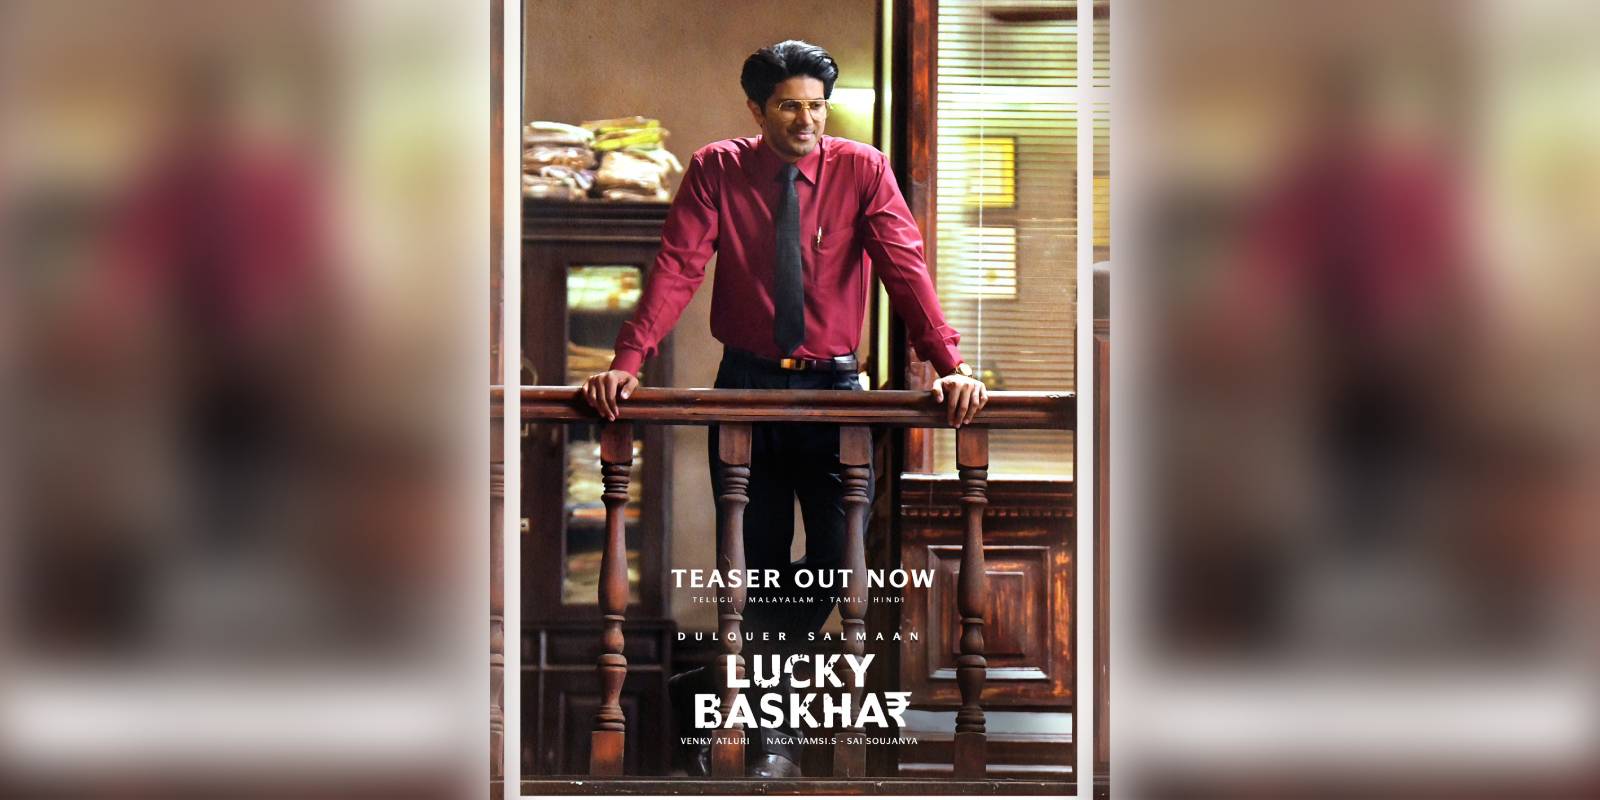 Dulquer Salmaan's Lucky Baskhar teaser out